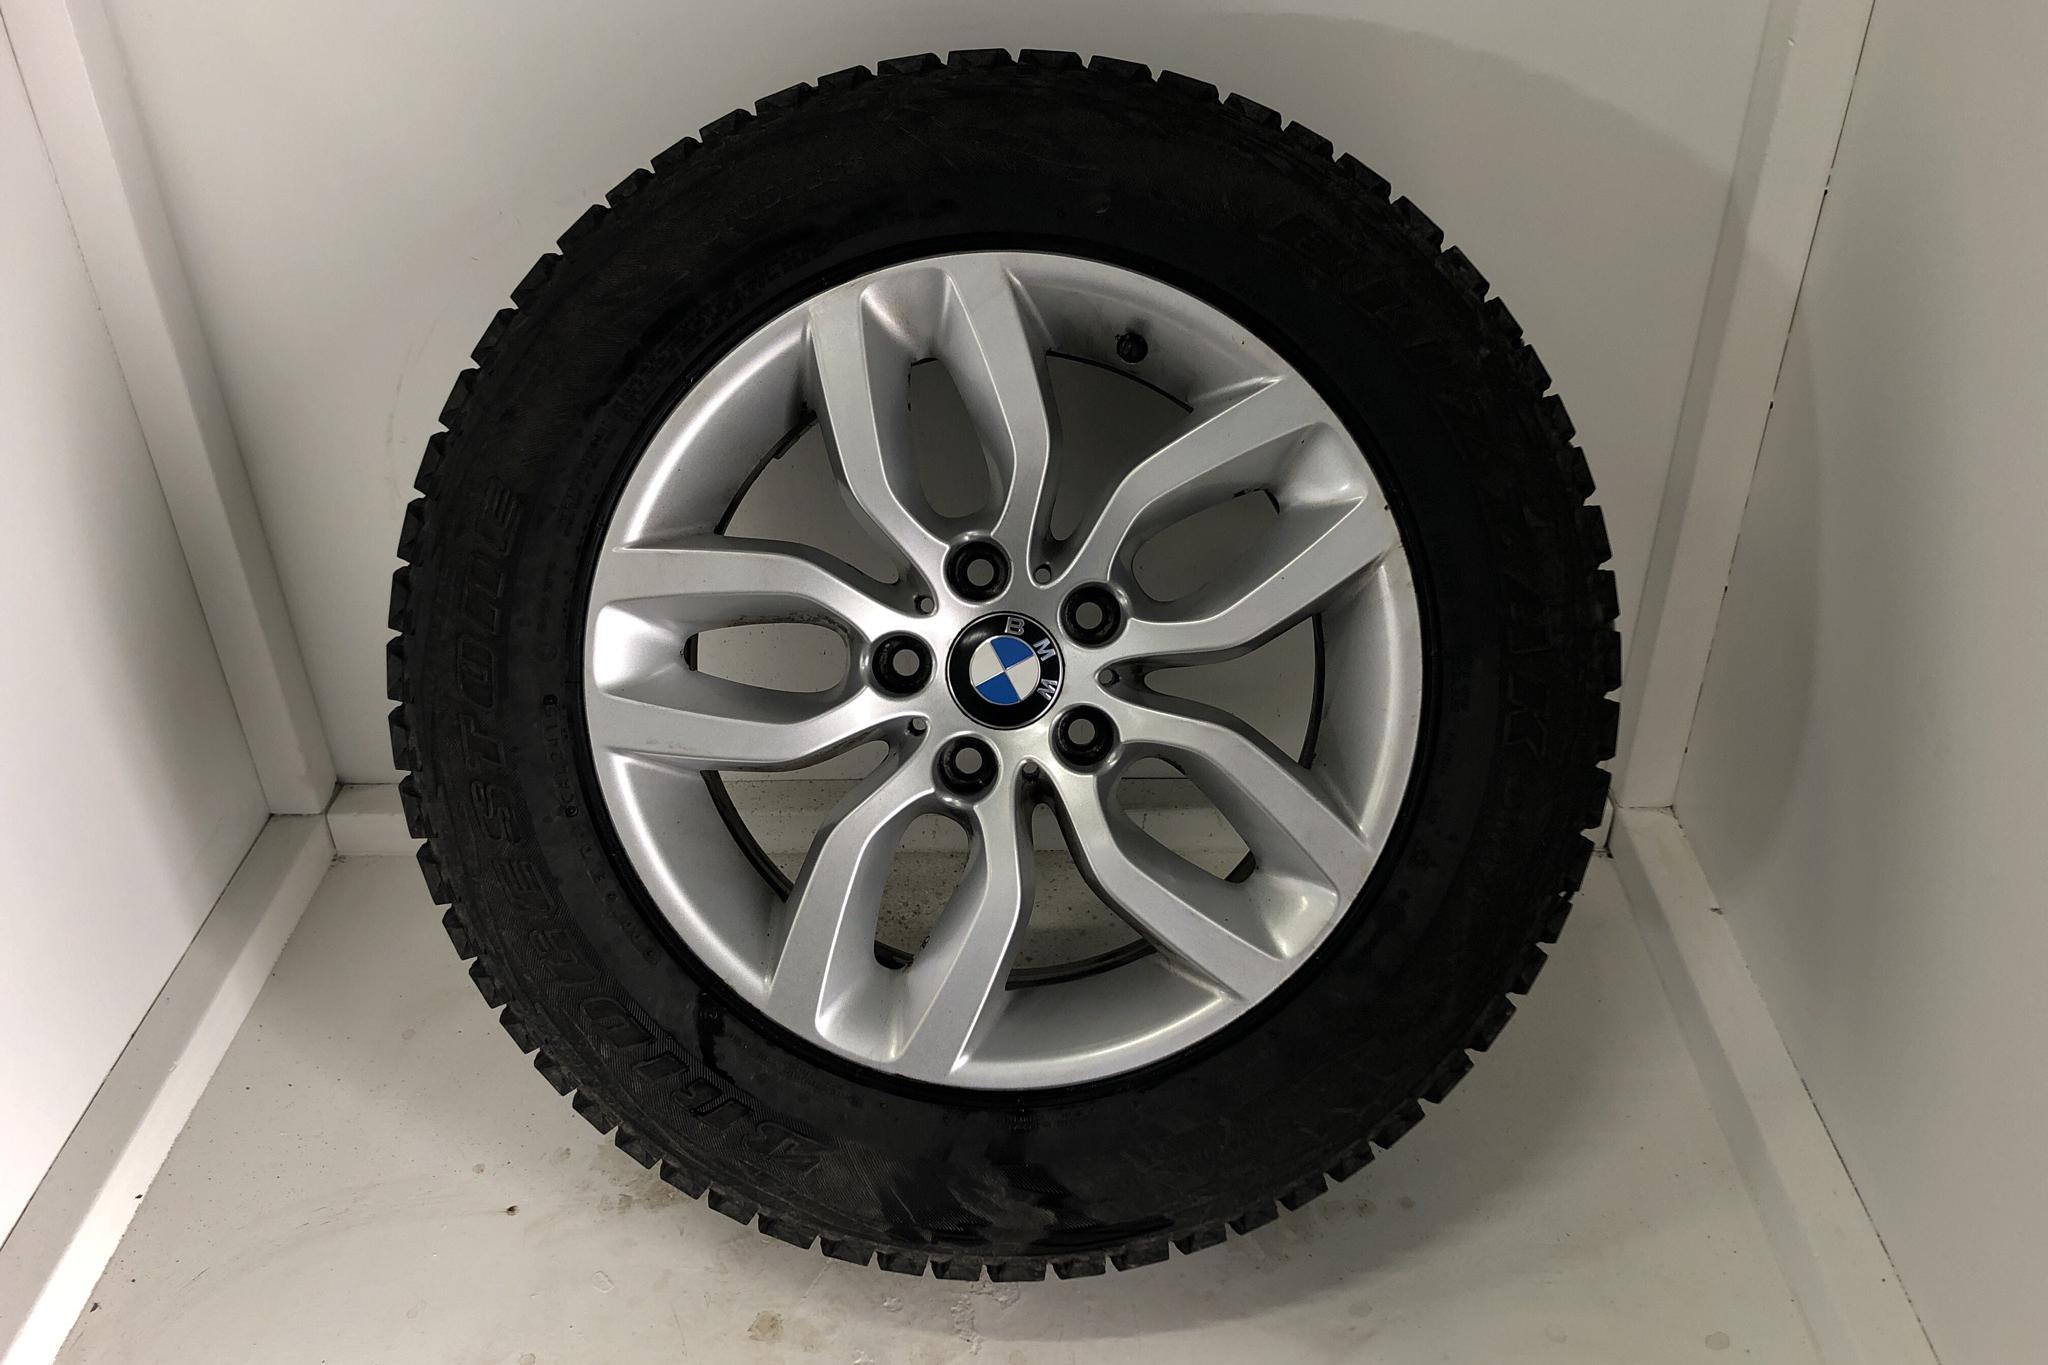 BMW X4 xDrive 20d, F26 (190hk) - 67 750 km - Automatic - black - 2017